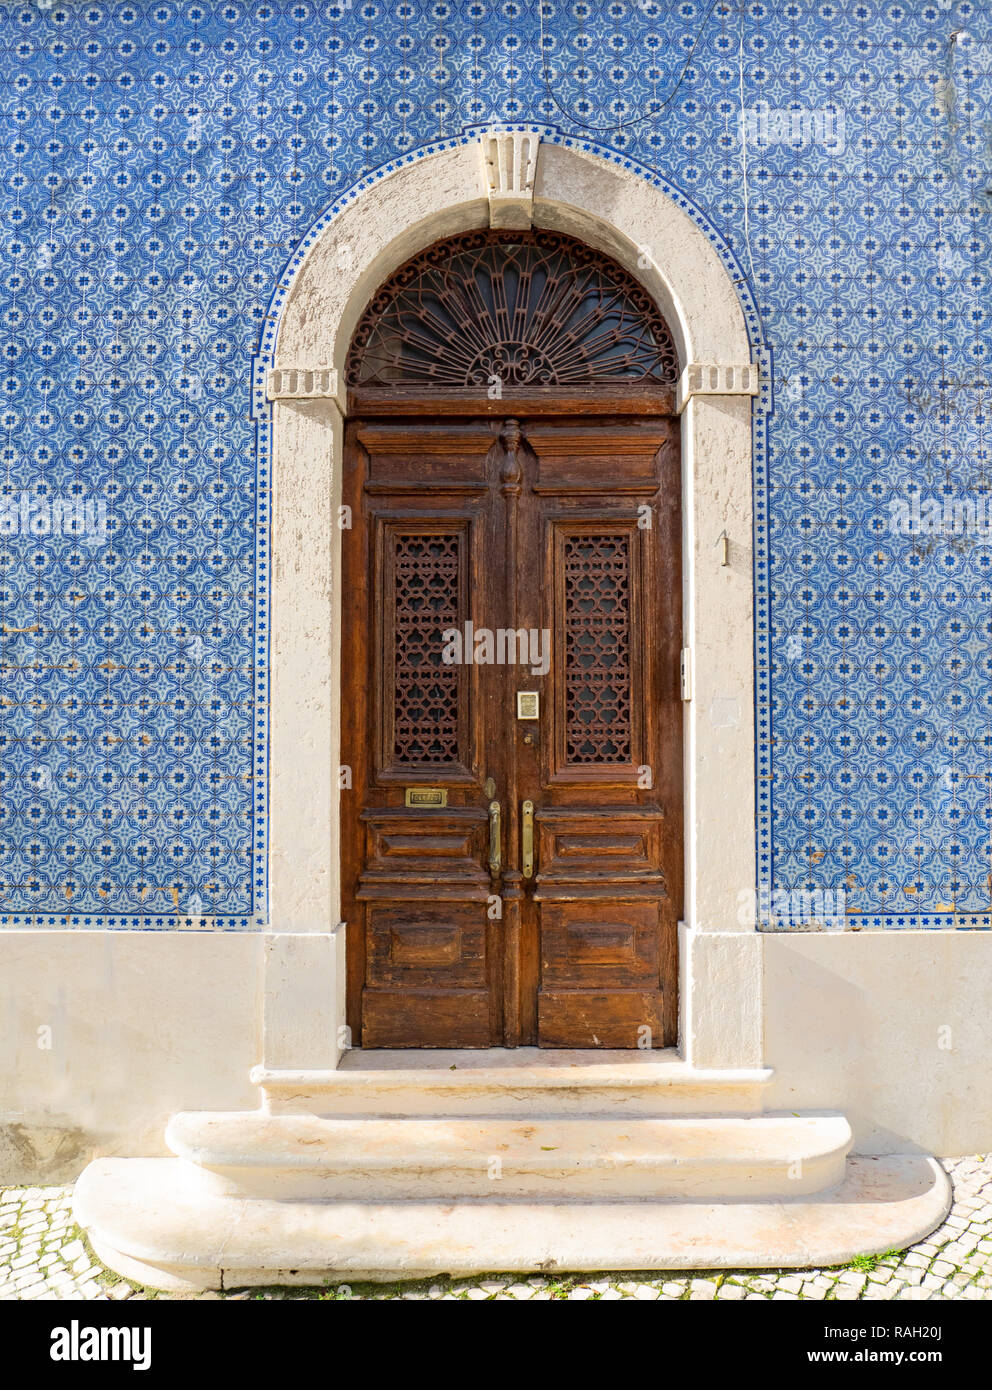 Lisbonne - Portugal, façade d'une maison couverte de tuiles bleues typiques, des azulejos, et ancienne porte en bois décorés Banque D'Images